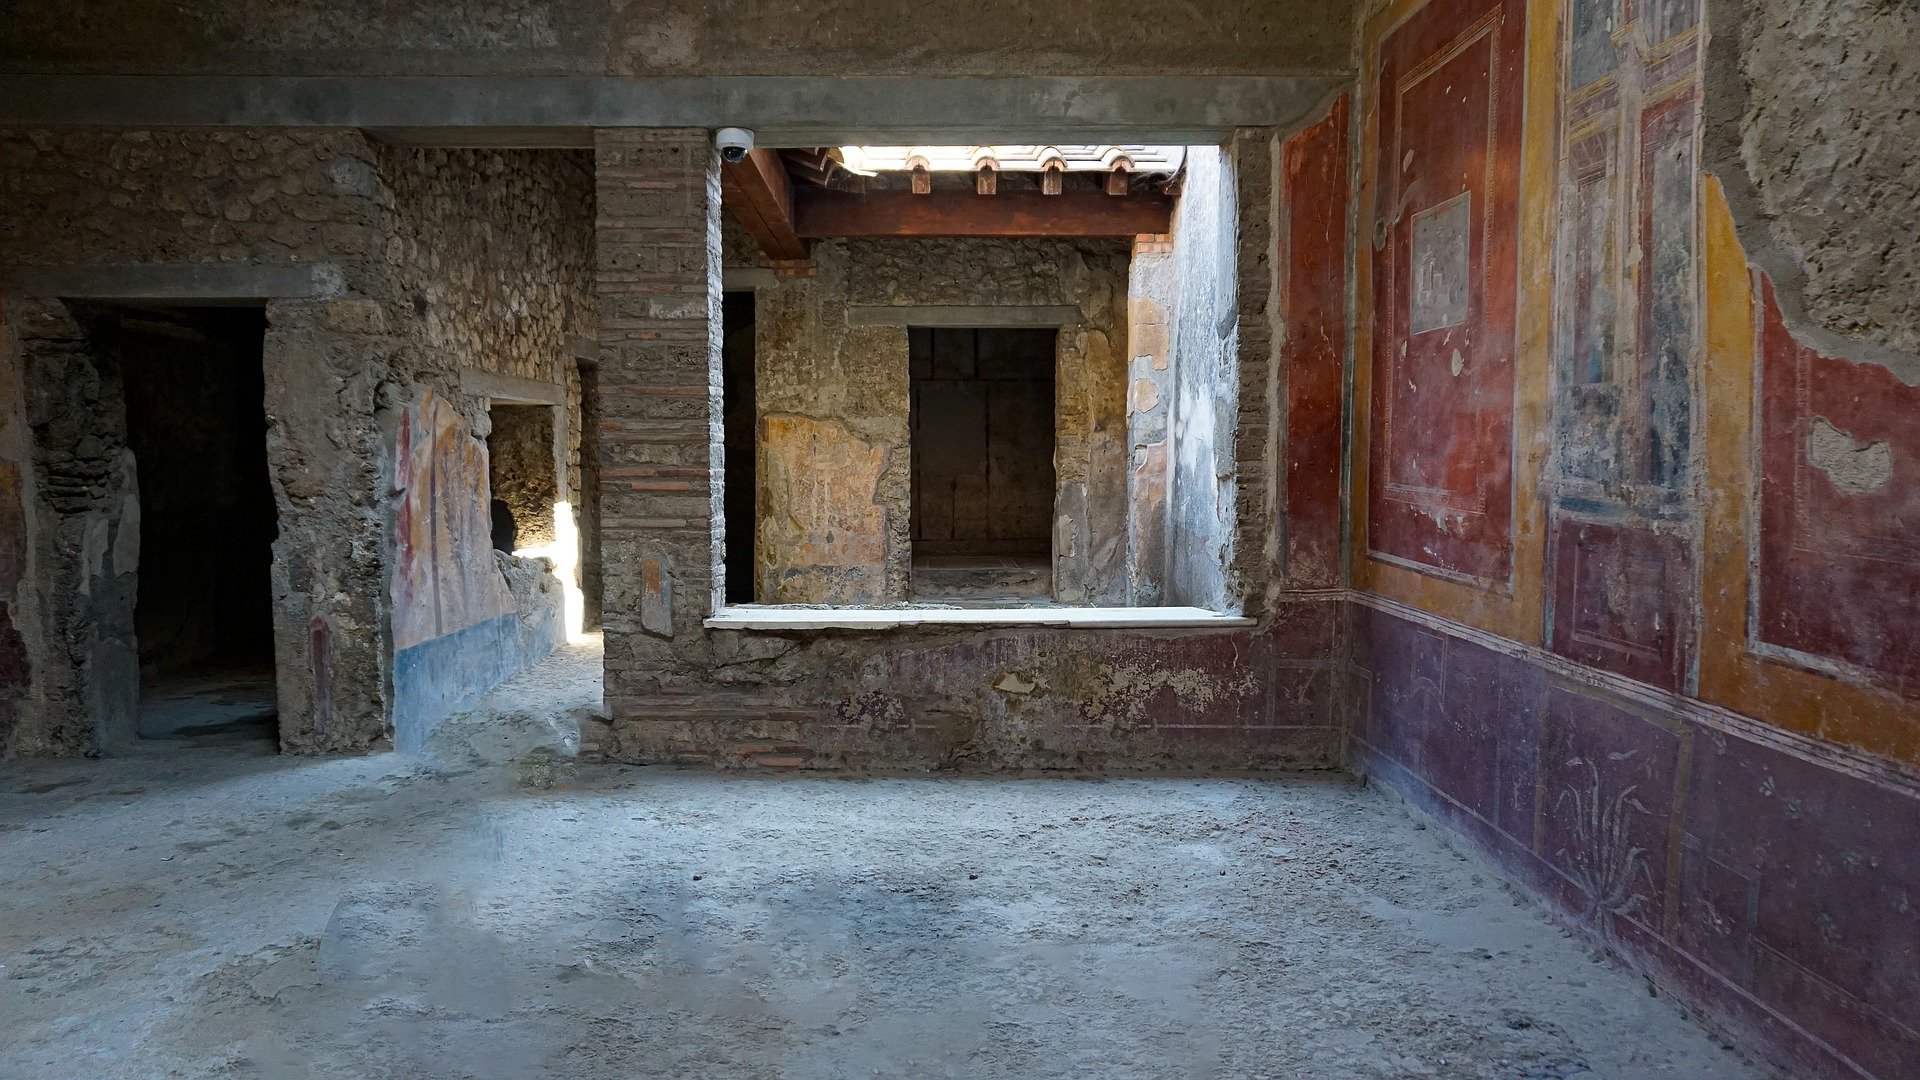 Wandbemalungen und Mosaike im Pompeji können dank der Solarziegel beleuchtet werden – ohne störende Stromleitungen. Foto: Pixabay